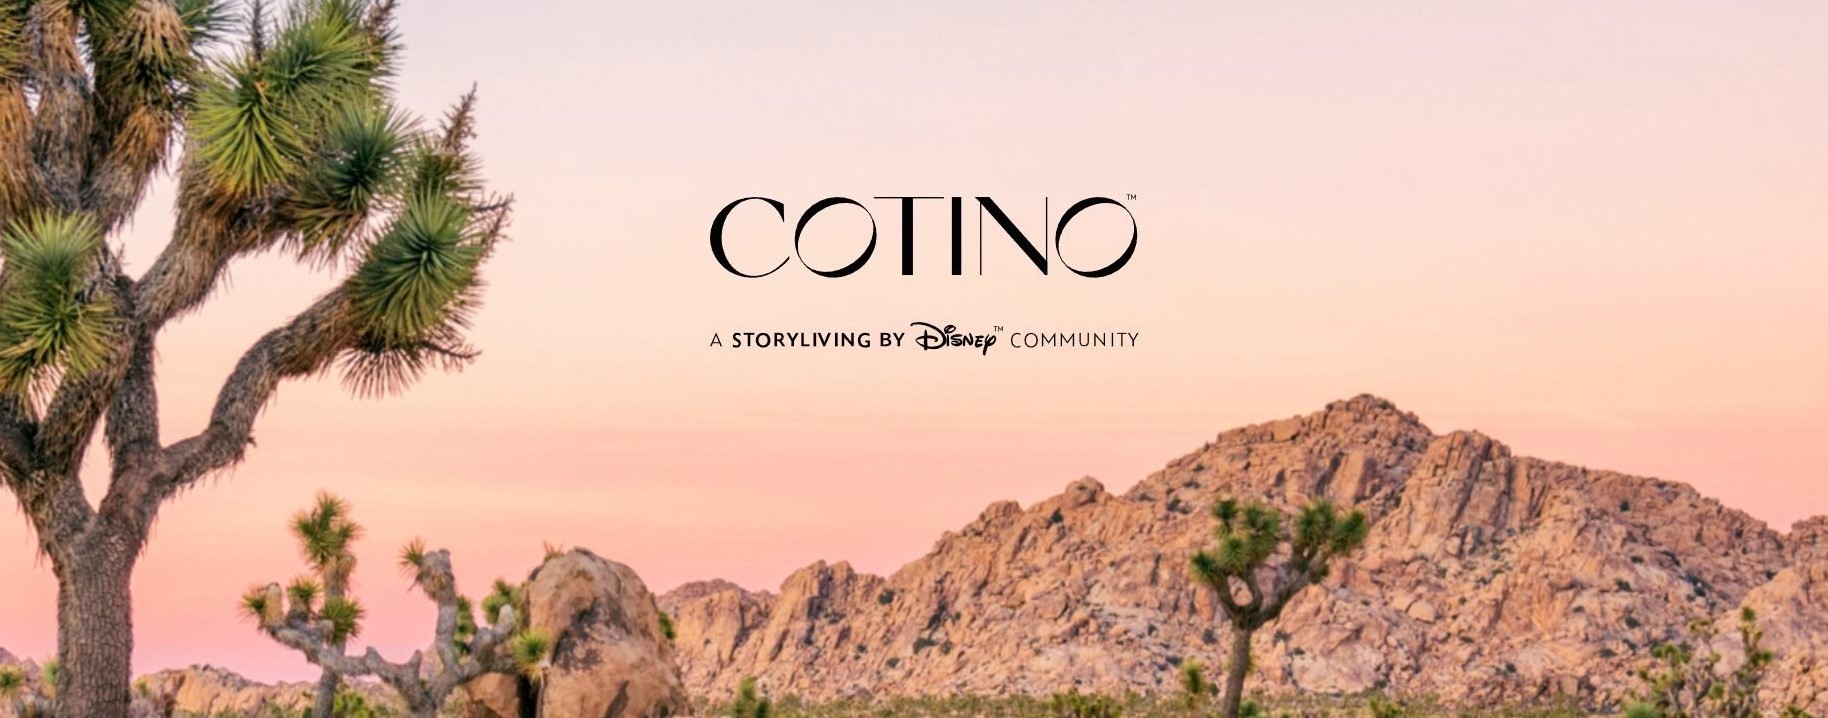 Το Cotino αποτελεί το πρώτο project του Storyliving by Disney